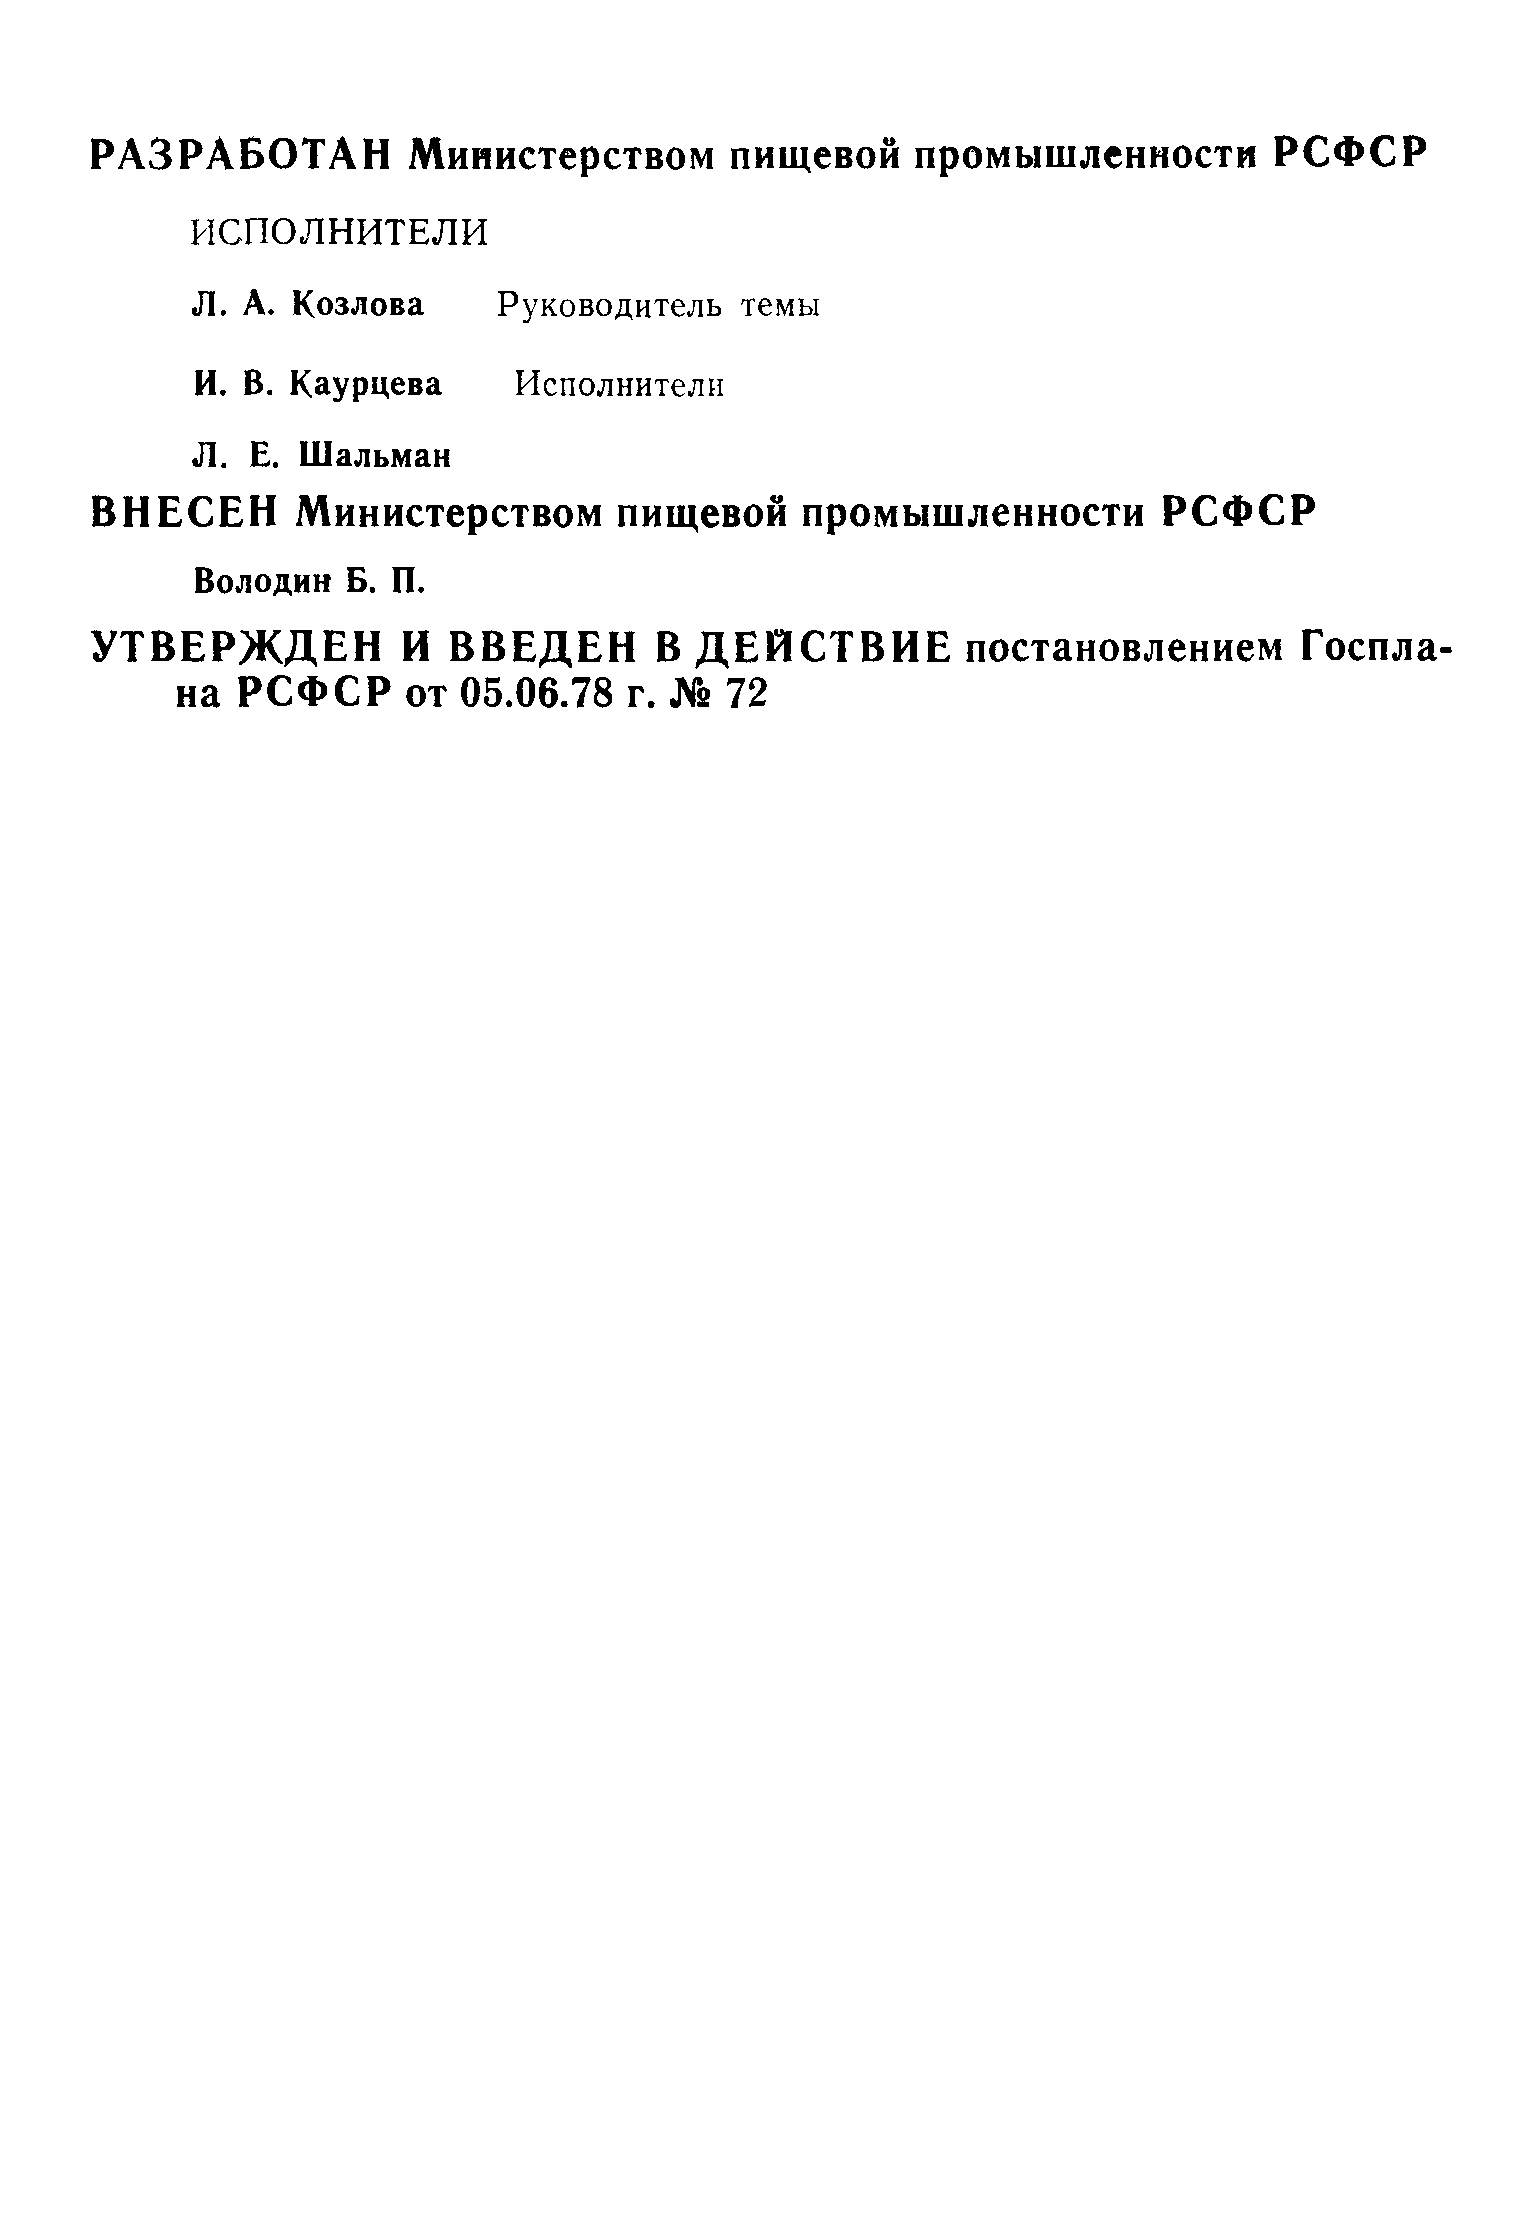 РСТ РСФСР 355-78